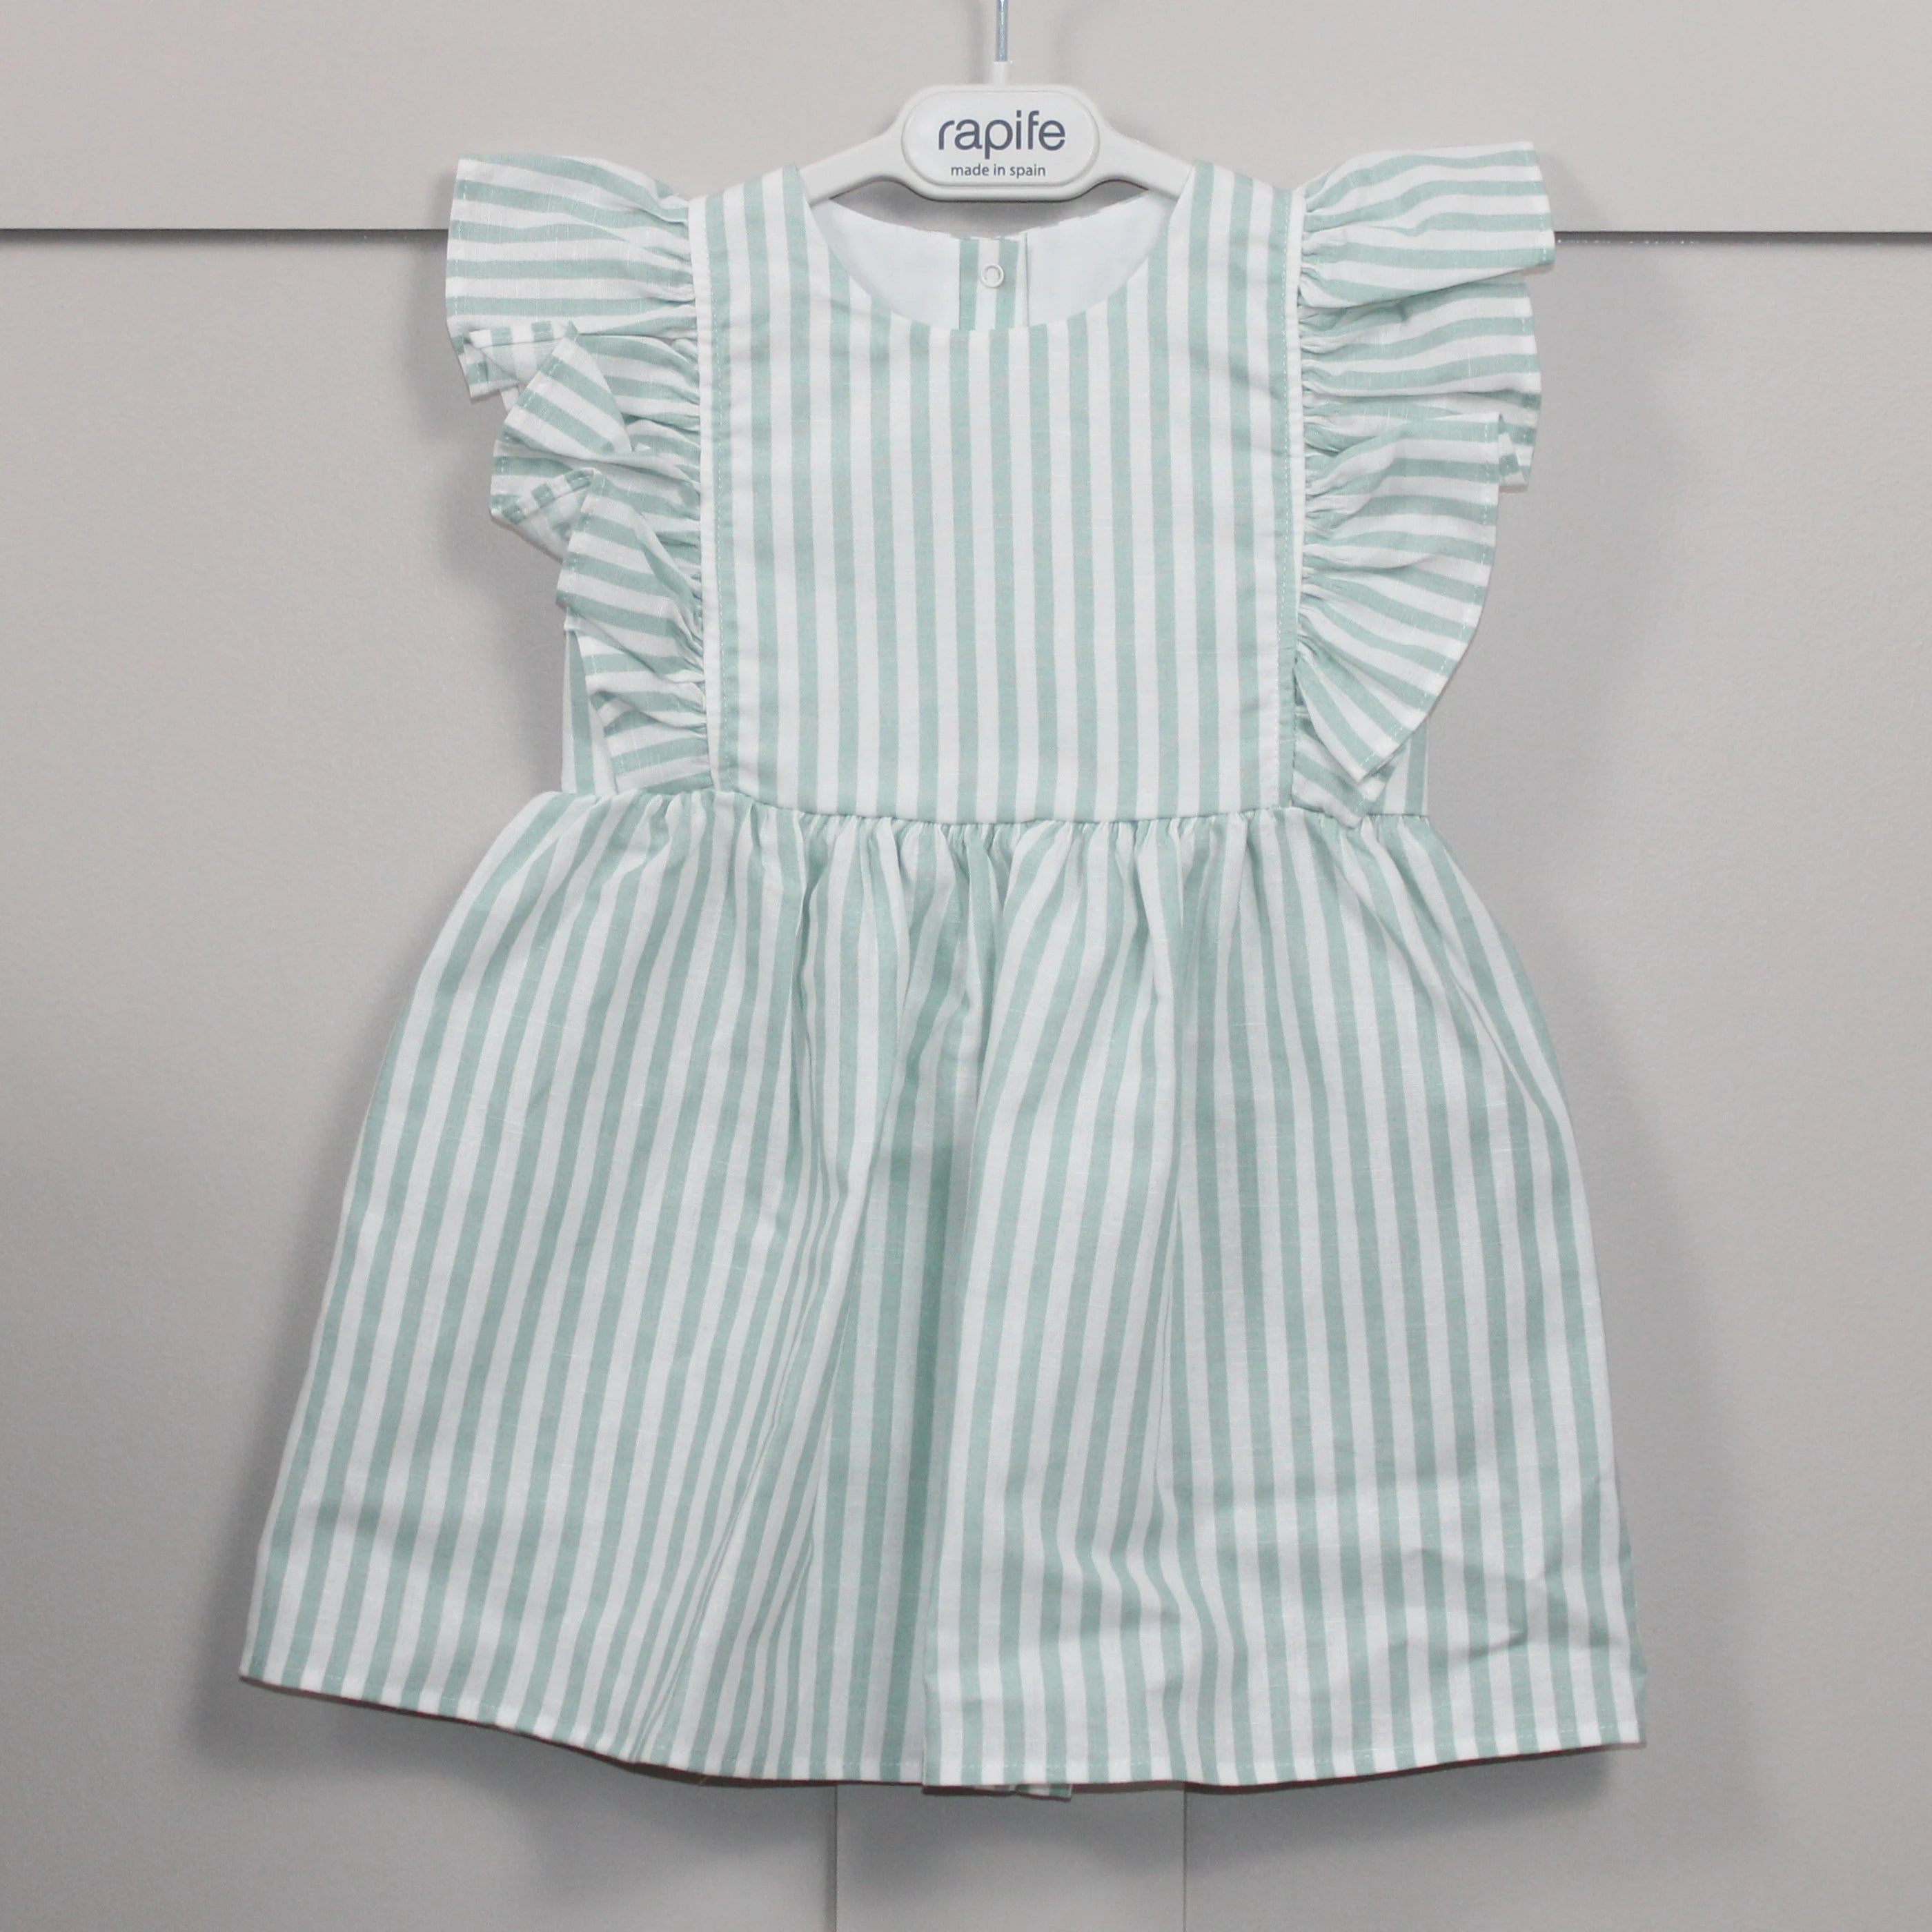 Rapife Mint striped dress